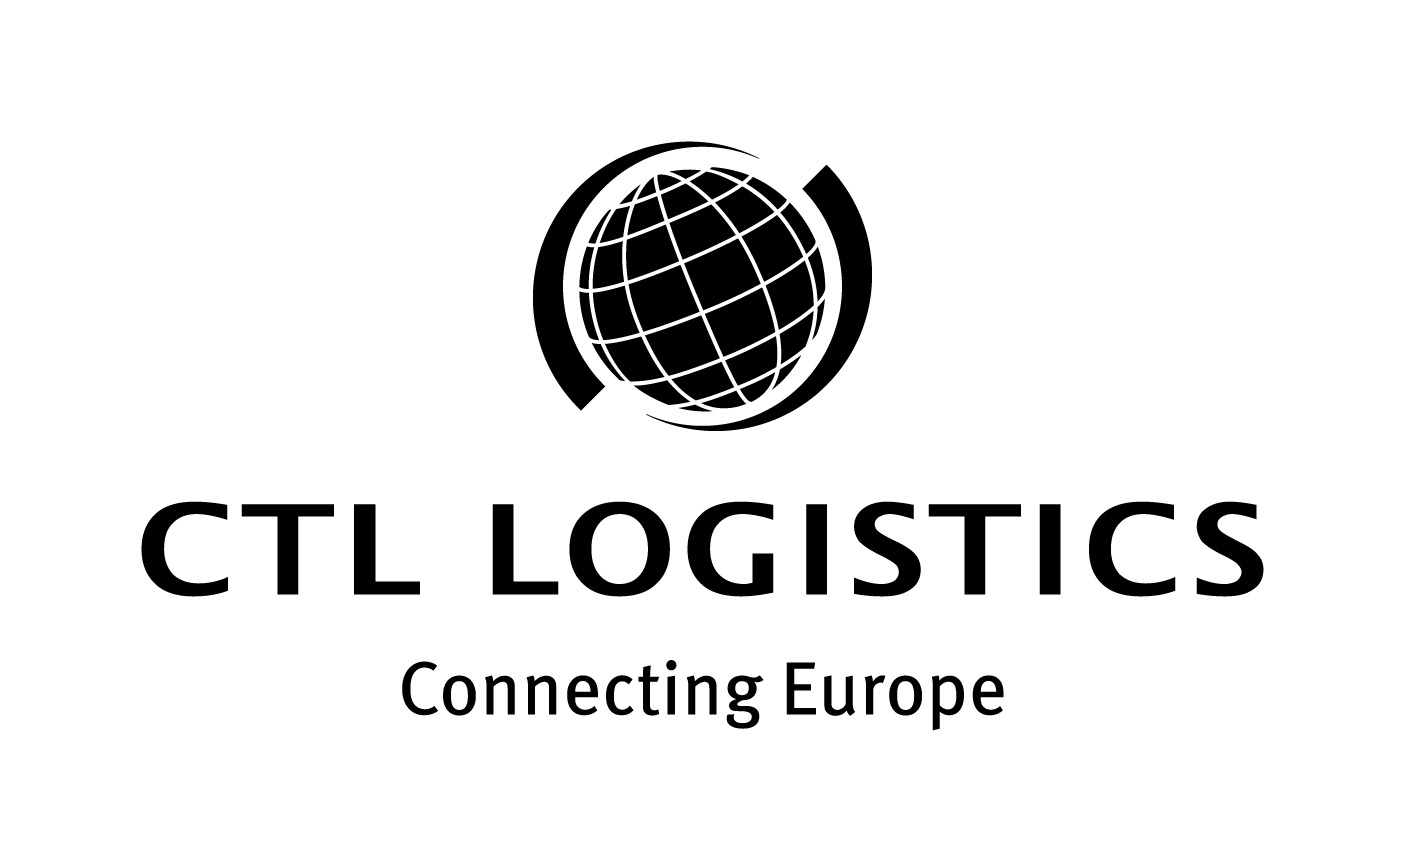 CTL Logistics